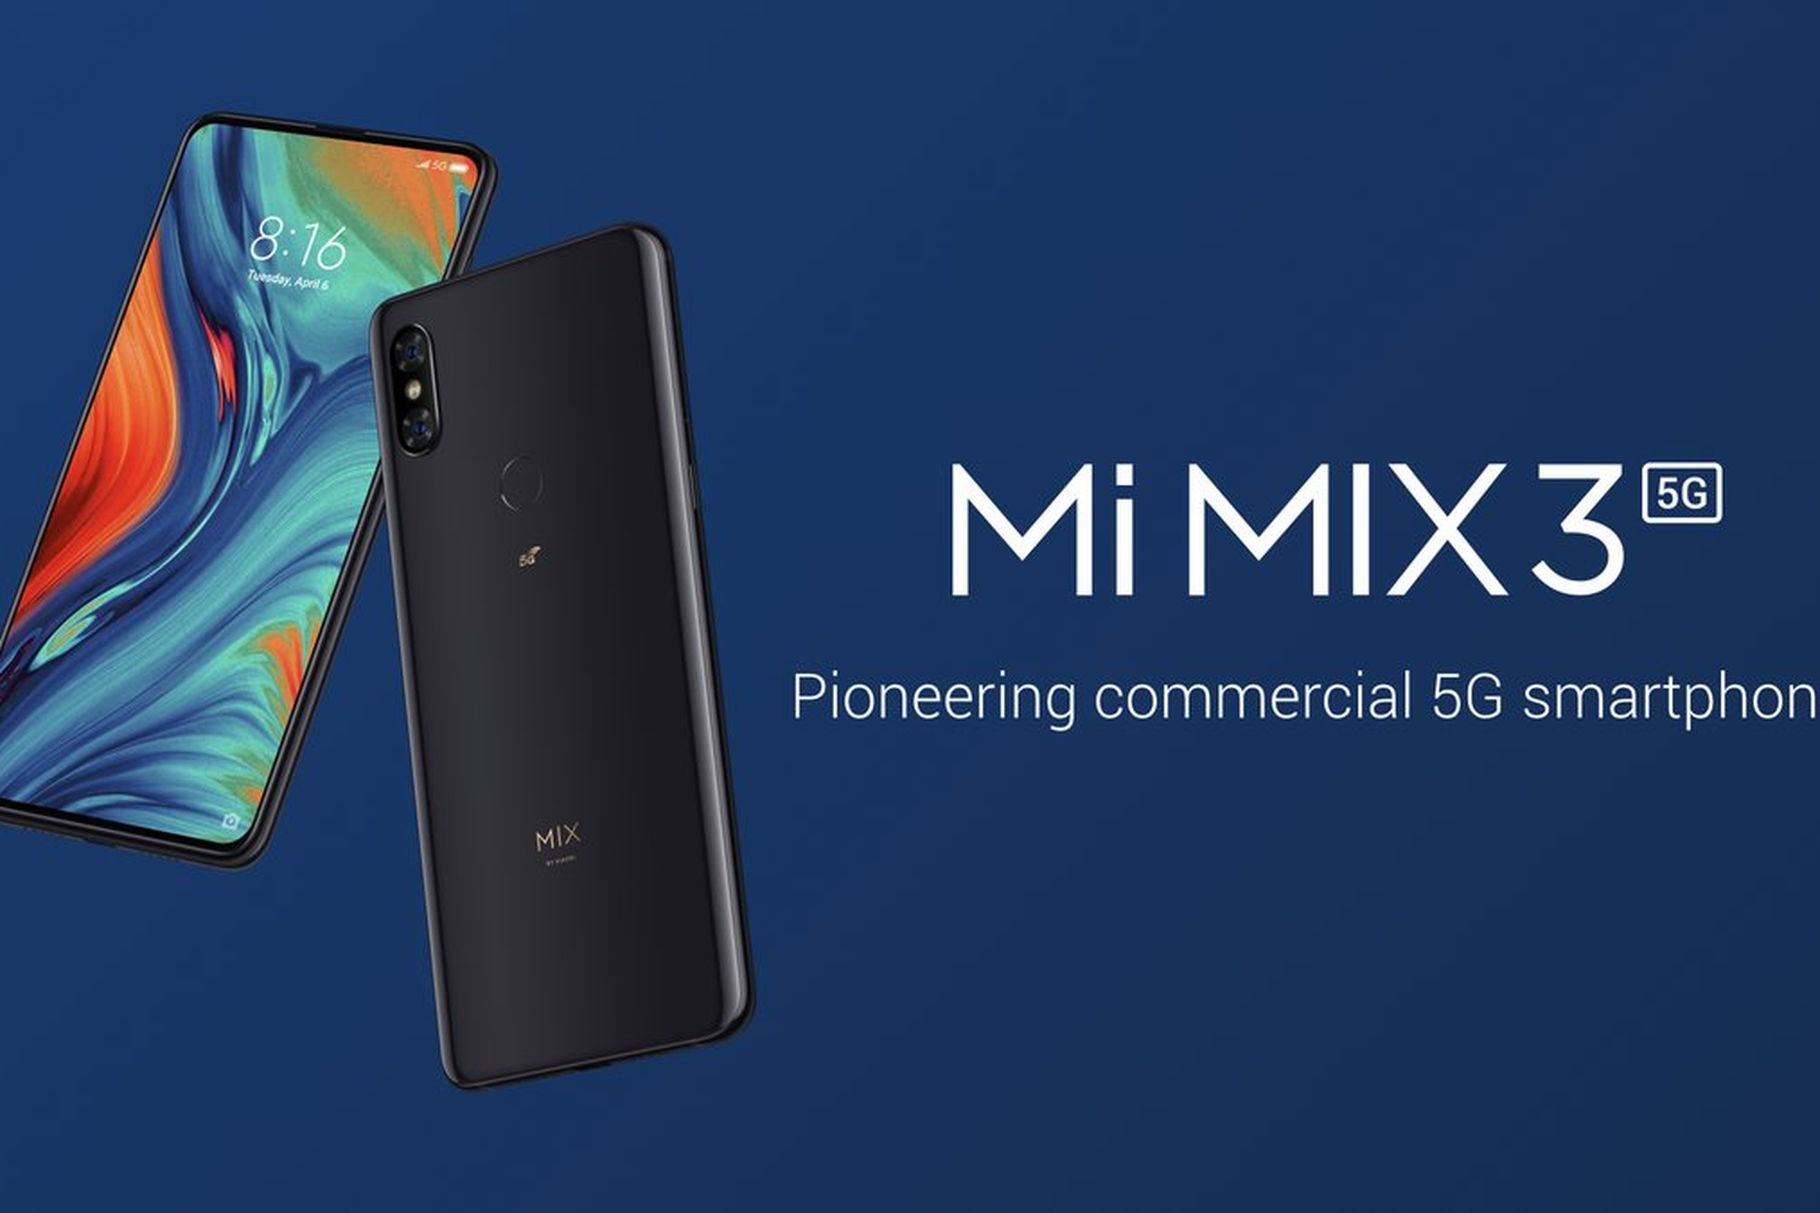 #MWC2019: Xiaomi sẽ ra mắt Mi Mix 3 phiên bản 5G vào tháng 5/2019, chạy Snapdragon 855, giá $679